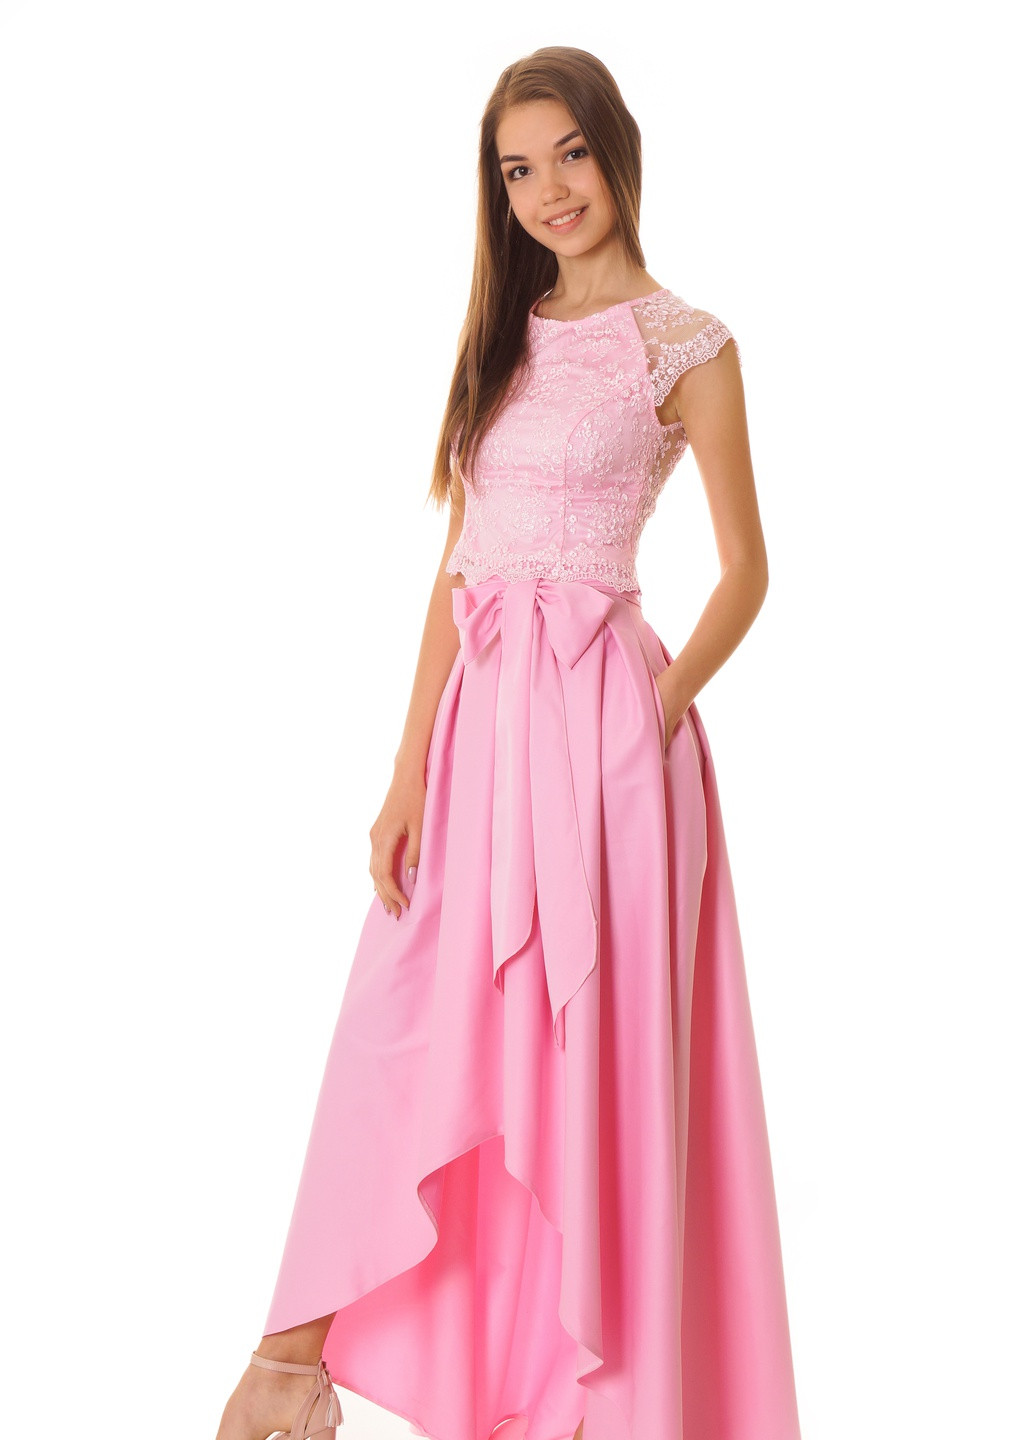 Юбочный костюм нарядного стиля розового цвета ITSMINE юбочный однотонный розовый вечерний кружево, полиэстер, хлопок